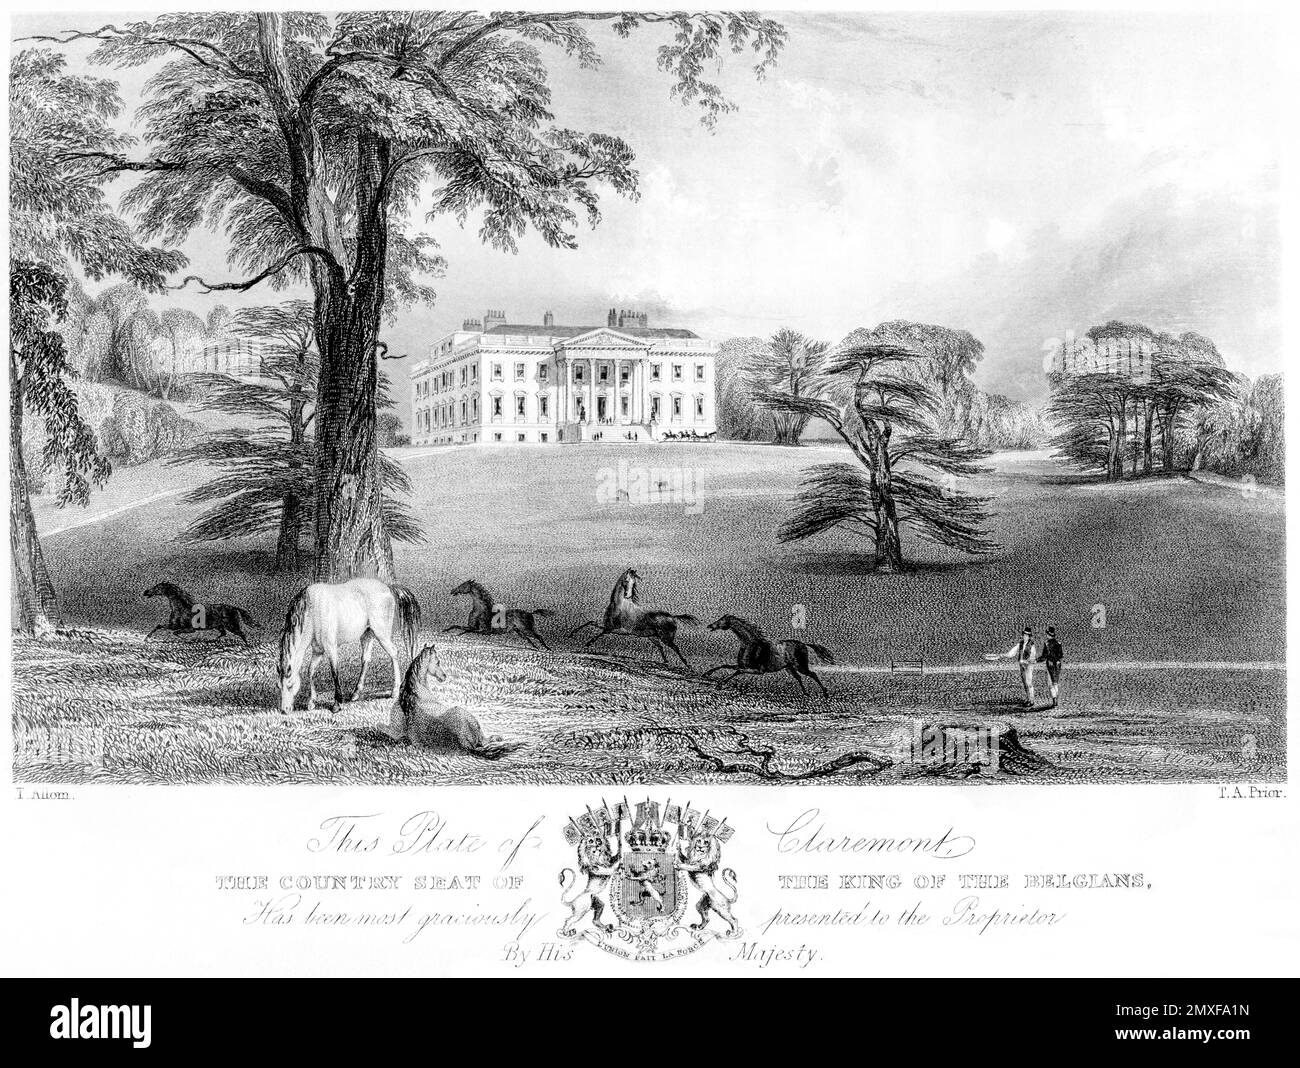 Eine Gravur von Claremont, dem Landsitz des Königs der Belgier, Esher, Surrey UK, gescannt in hoher Auflösung aus einem 1850 gedruckten Buch. Das Hier Stockfoto